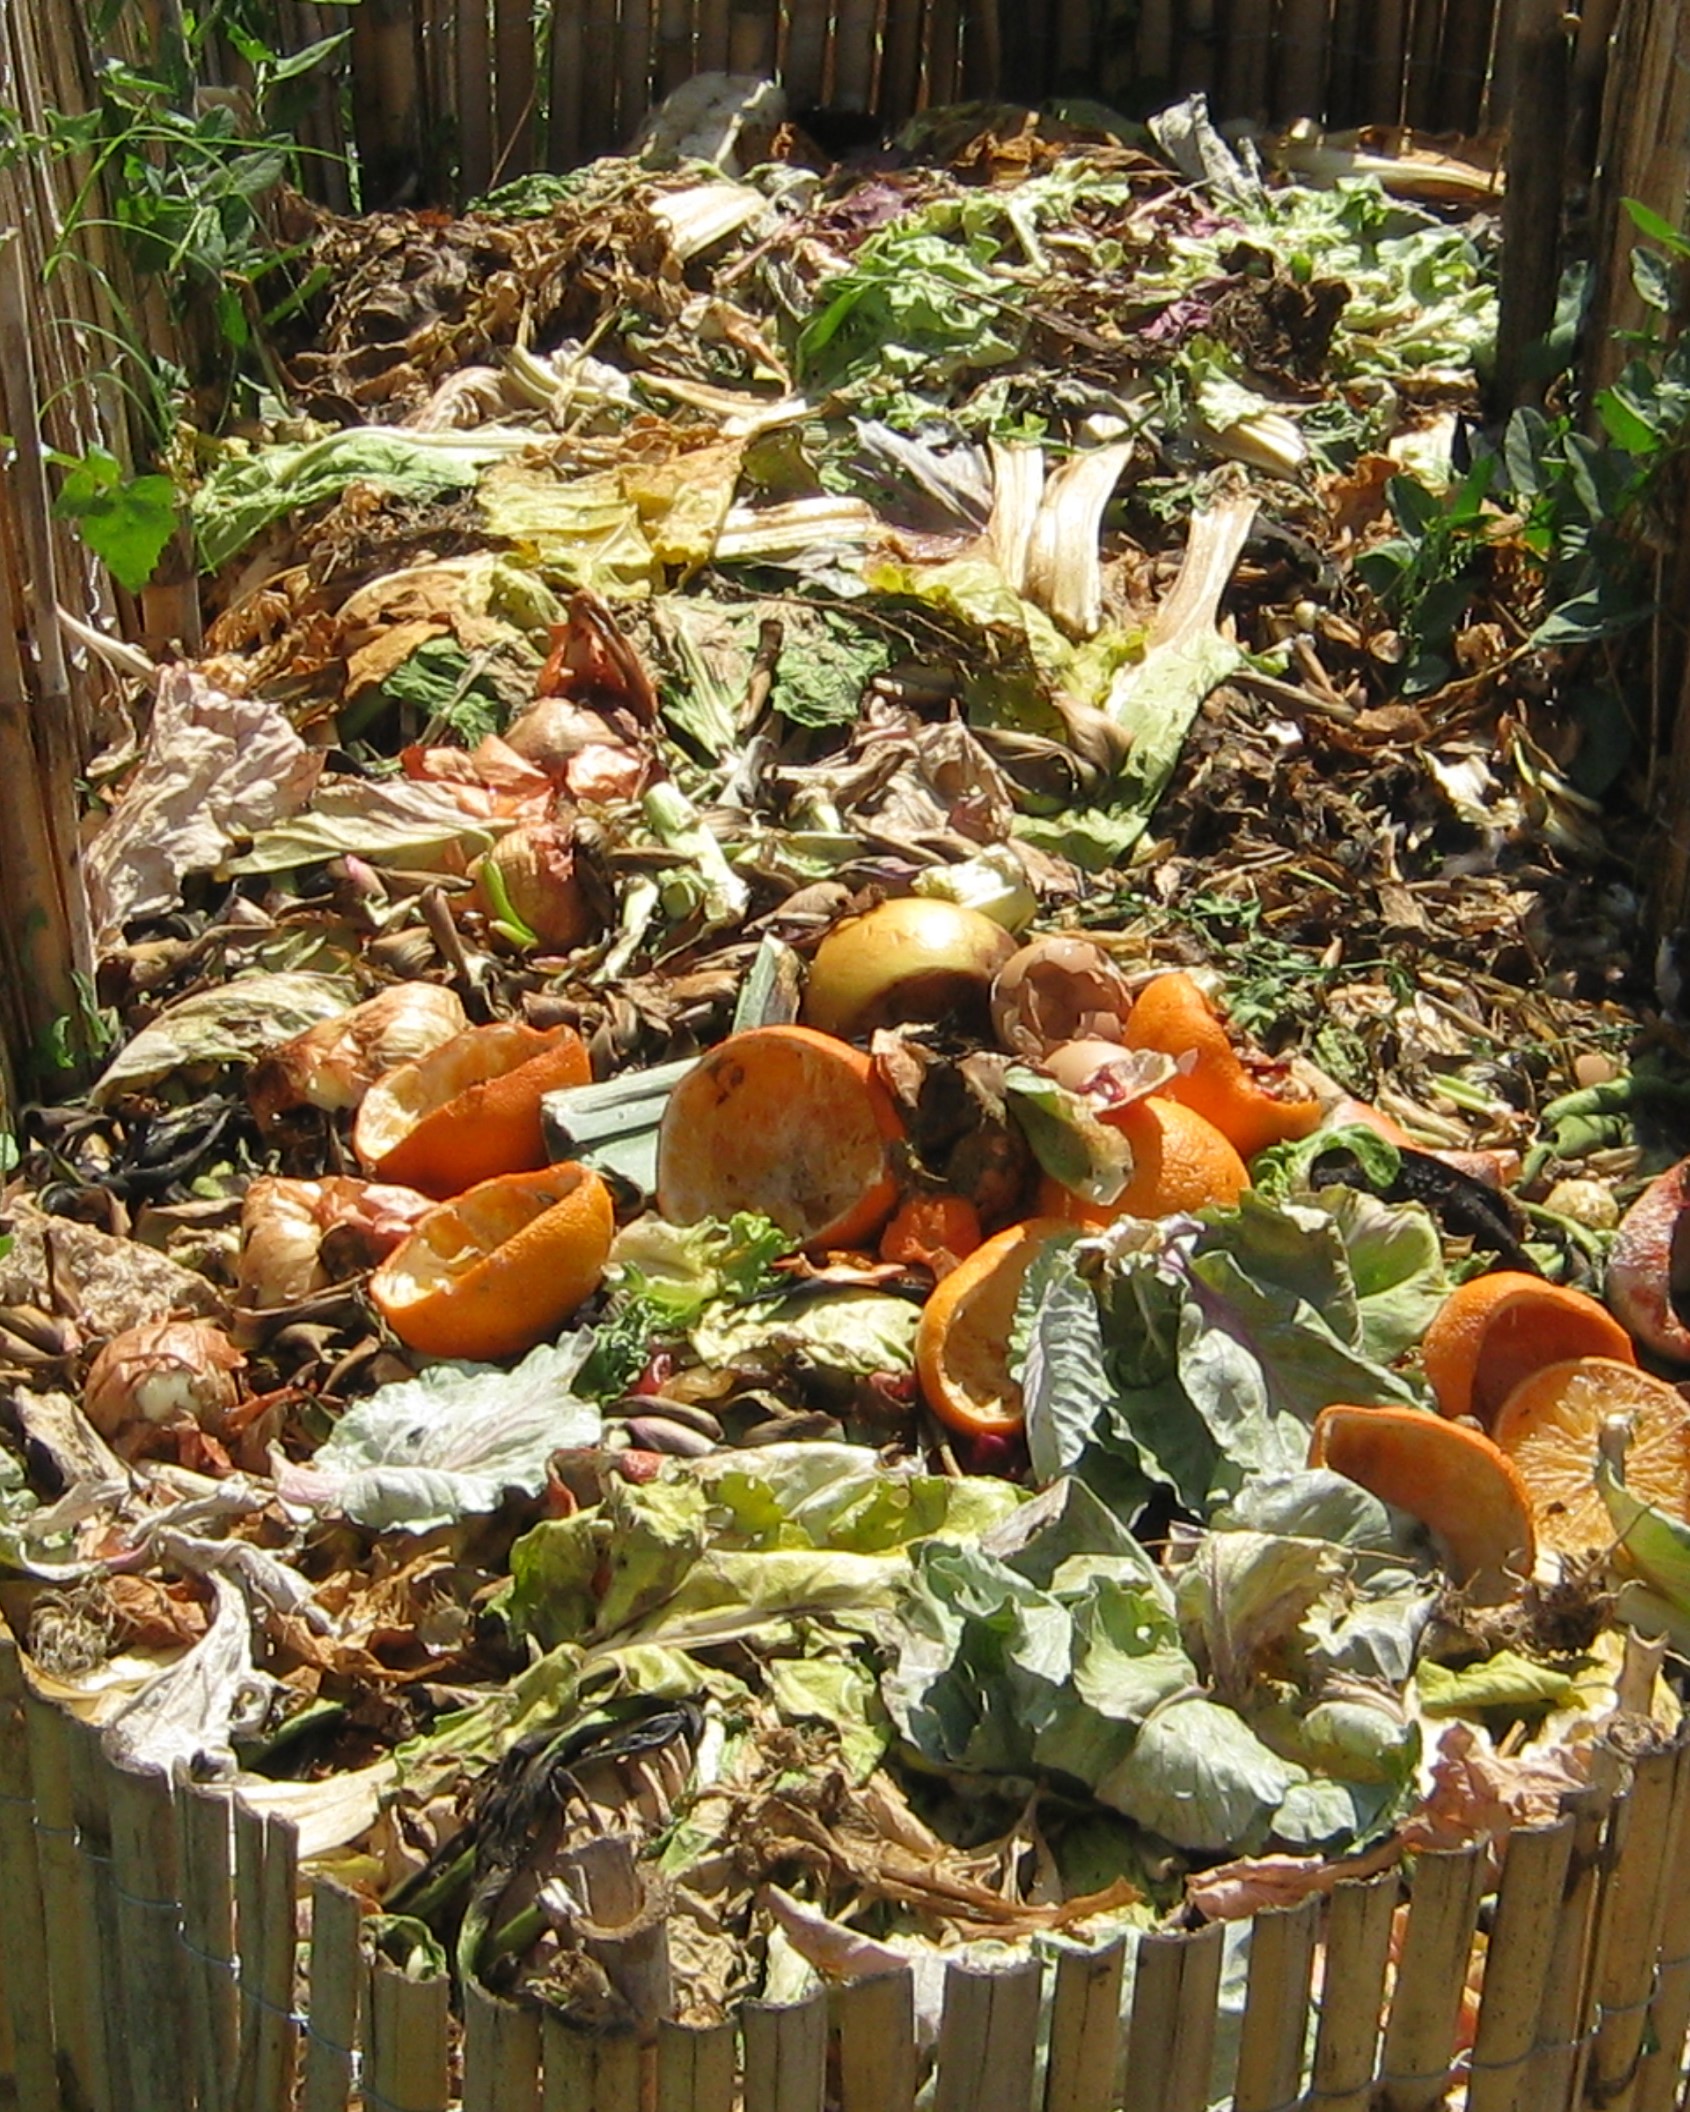 a backyard compost bin full of fruits, veggies, and yard waste